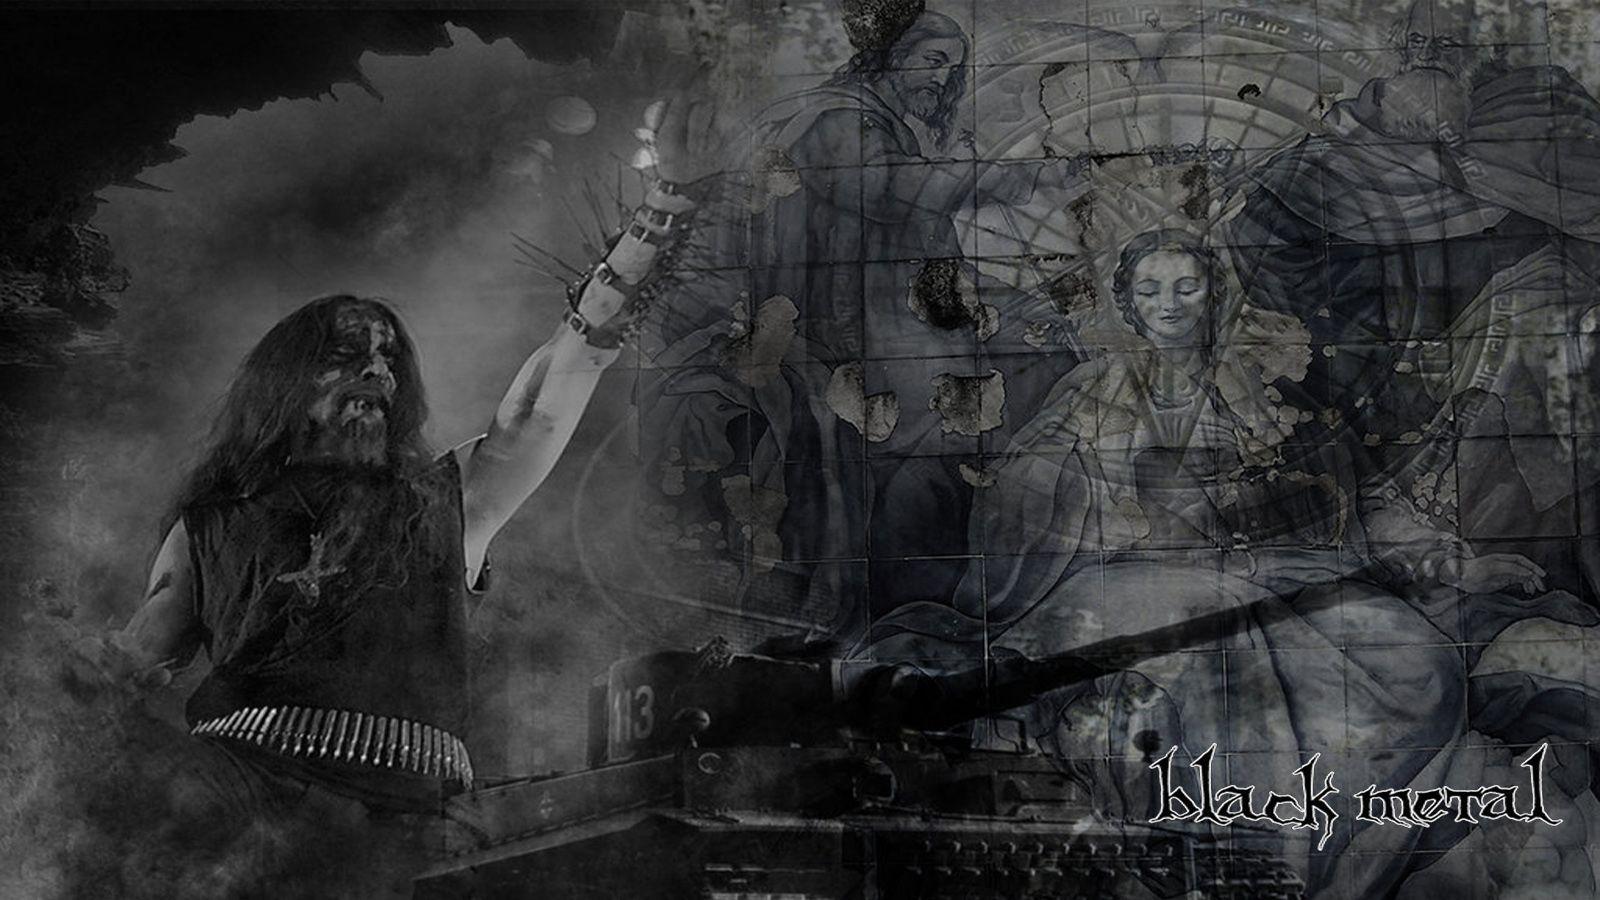 Amazing Image: Black Metal Wallpaper, Amazing Black Metal Image